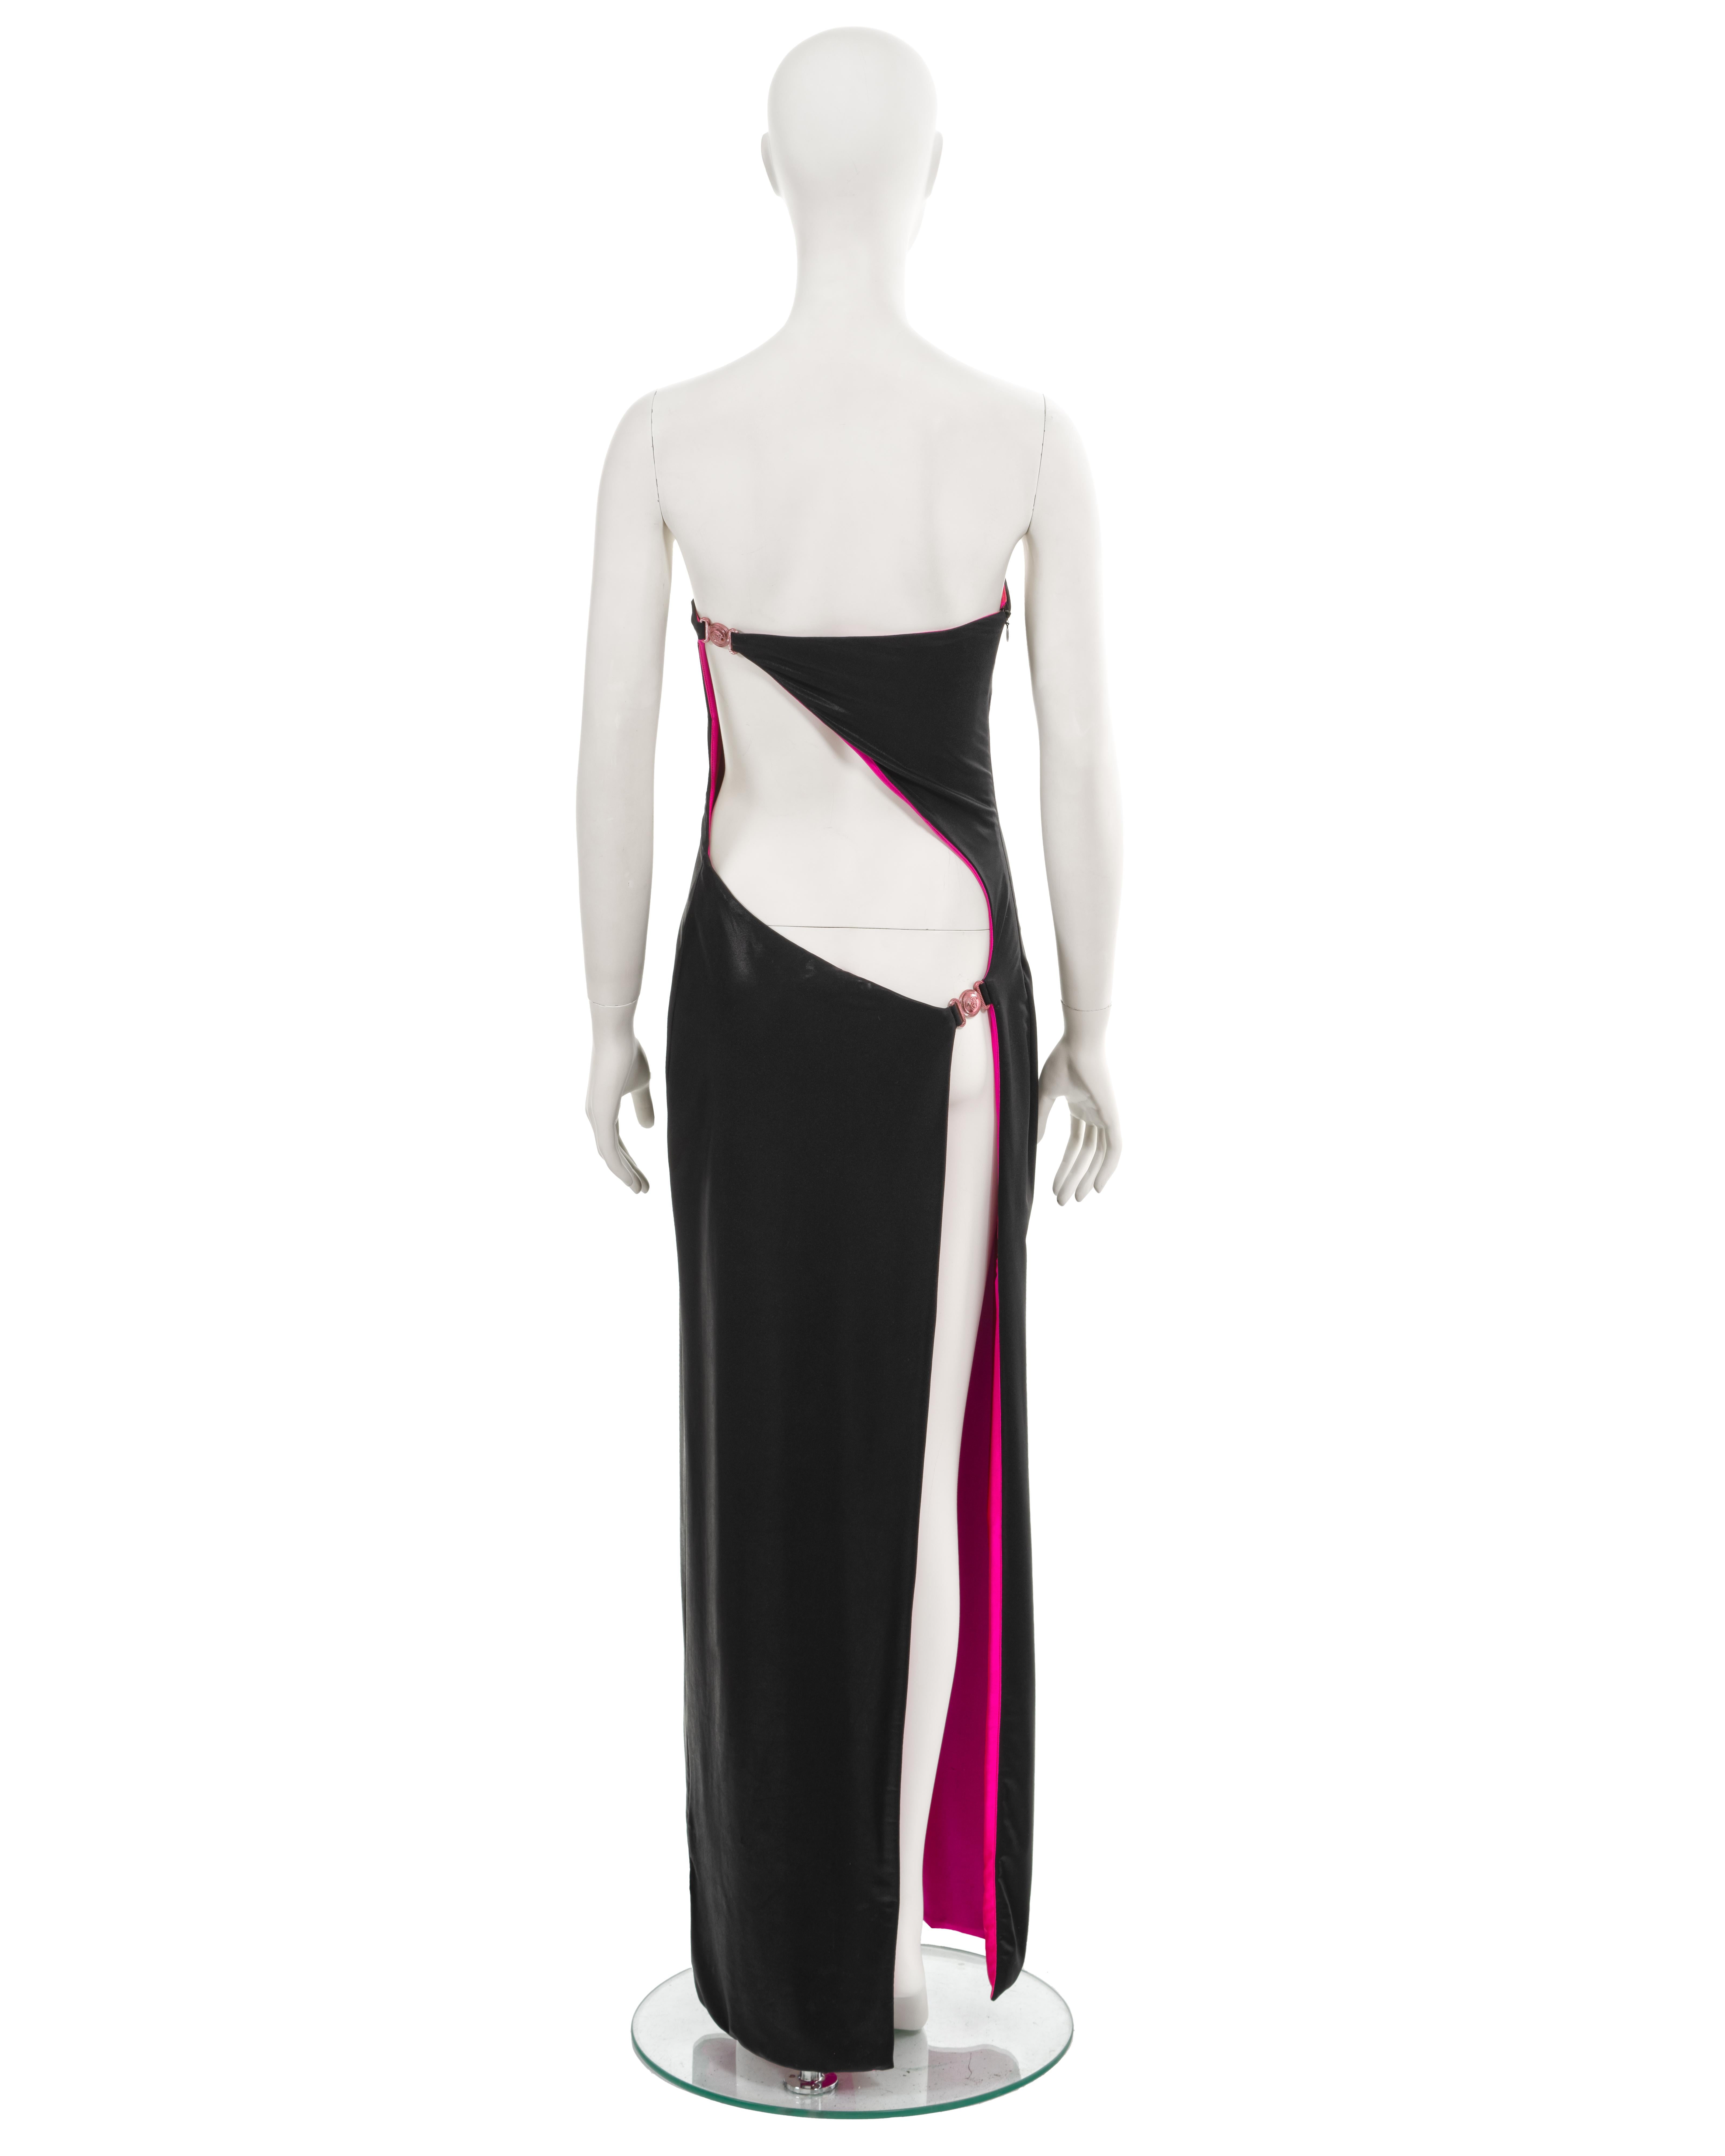 Robe du soir à bretelles d'archives de Gianni Versace, confectionnée en jersey stretch noir d'aspect mouillé et complétée par une doublure rose vif. Cette robe exquise présente une élégante découpe dans le dos, ornée de méduses en or rose, ainsi